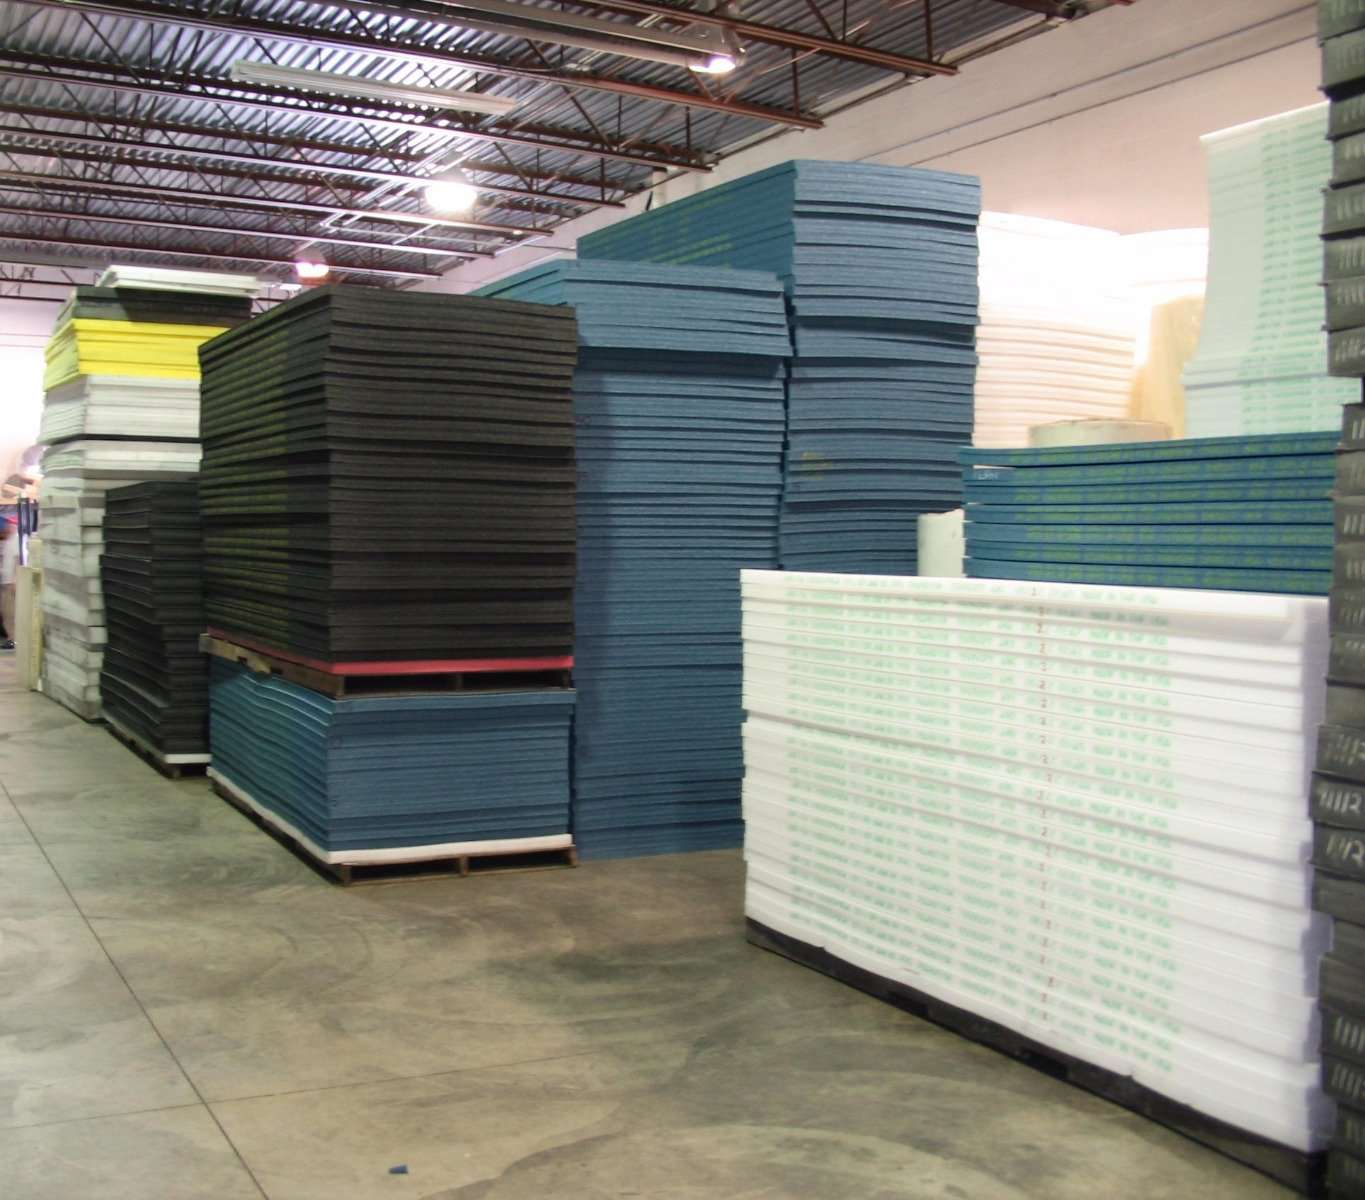 48 x 108 x 1 - 2.2 lb. Density, Polyethylene Foam Plank, Laminated, White  - BGR